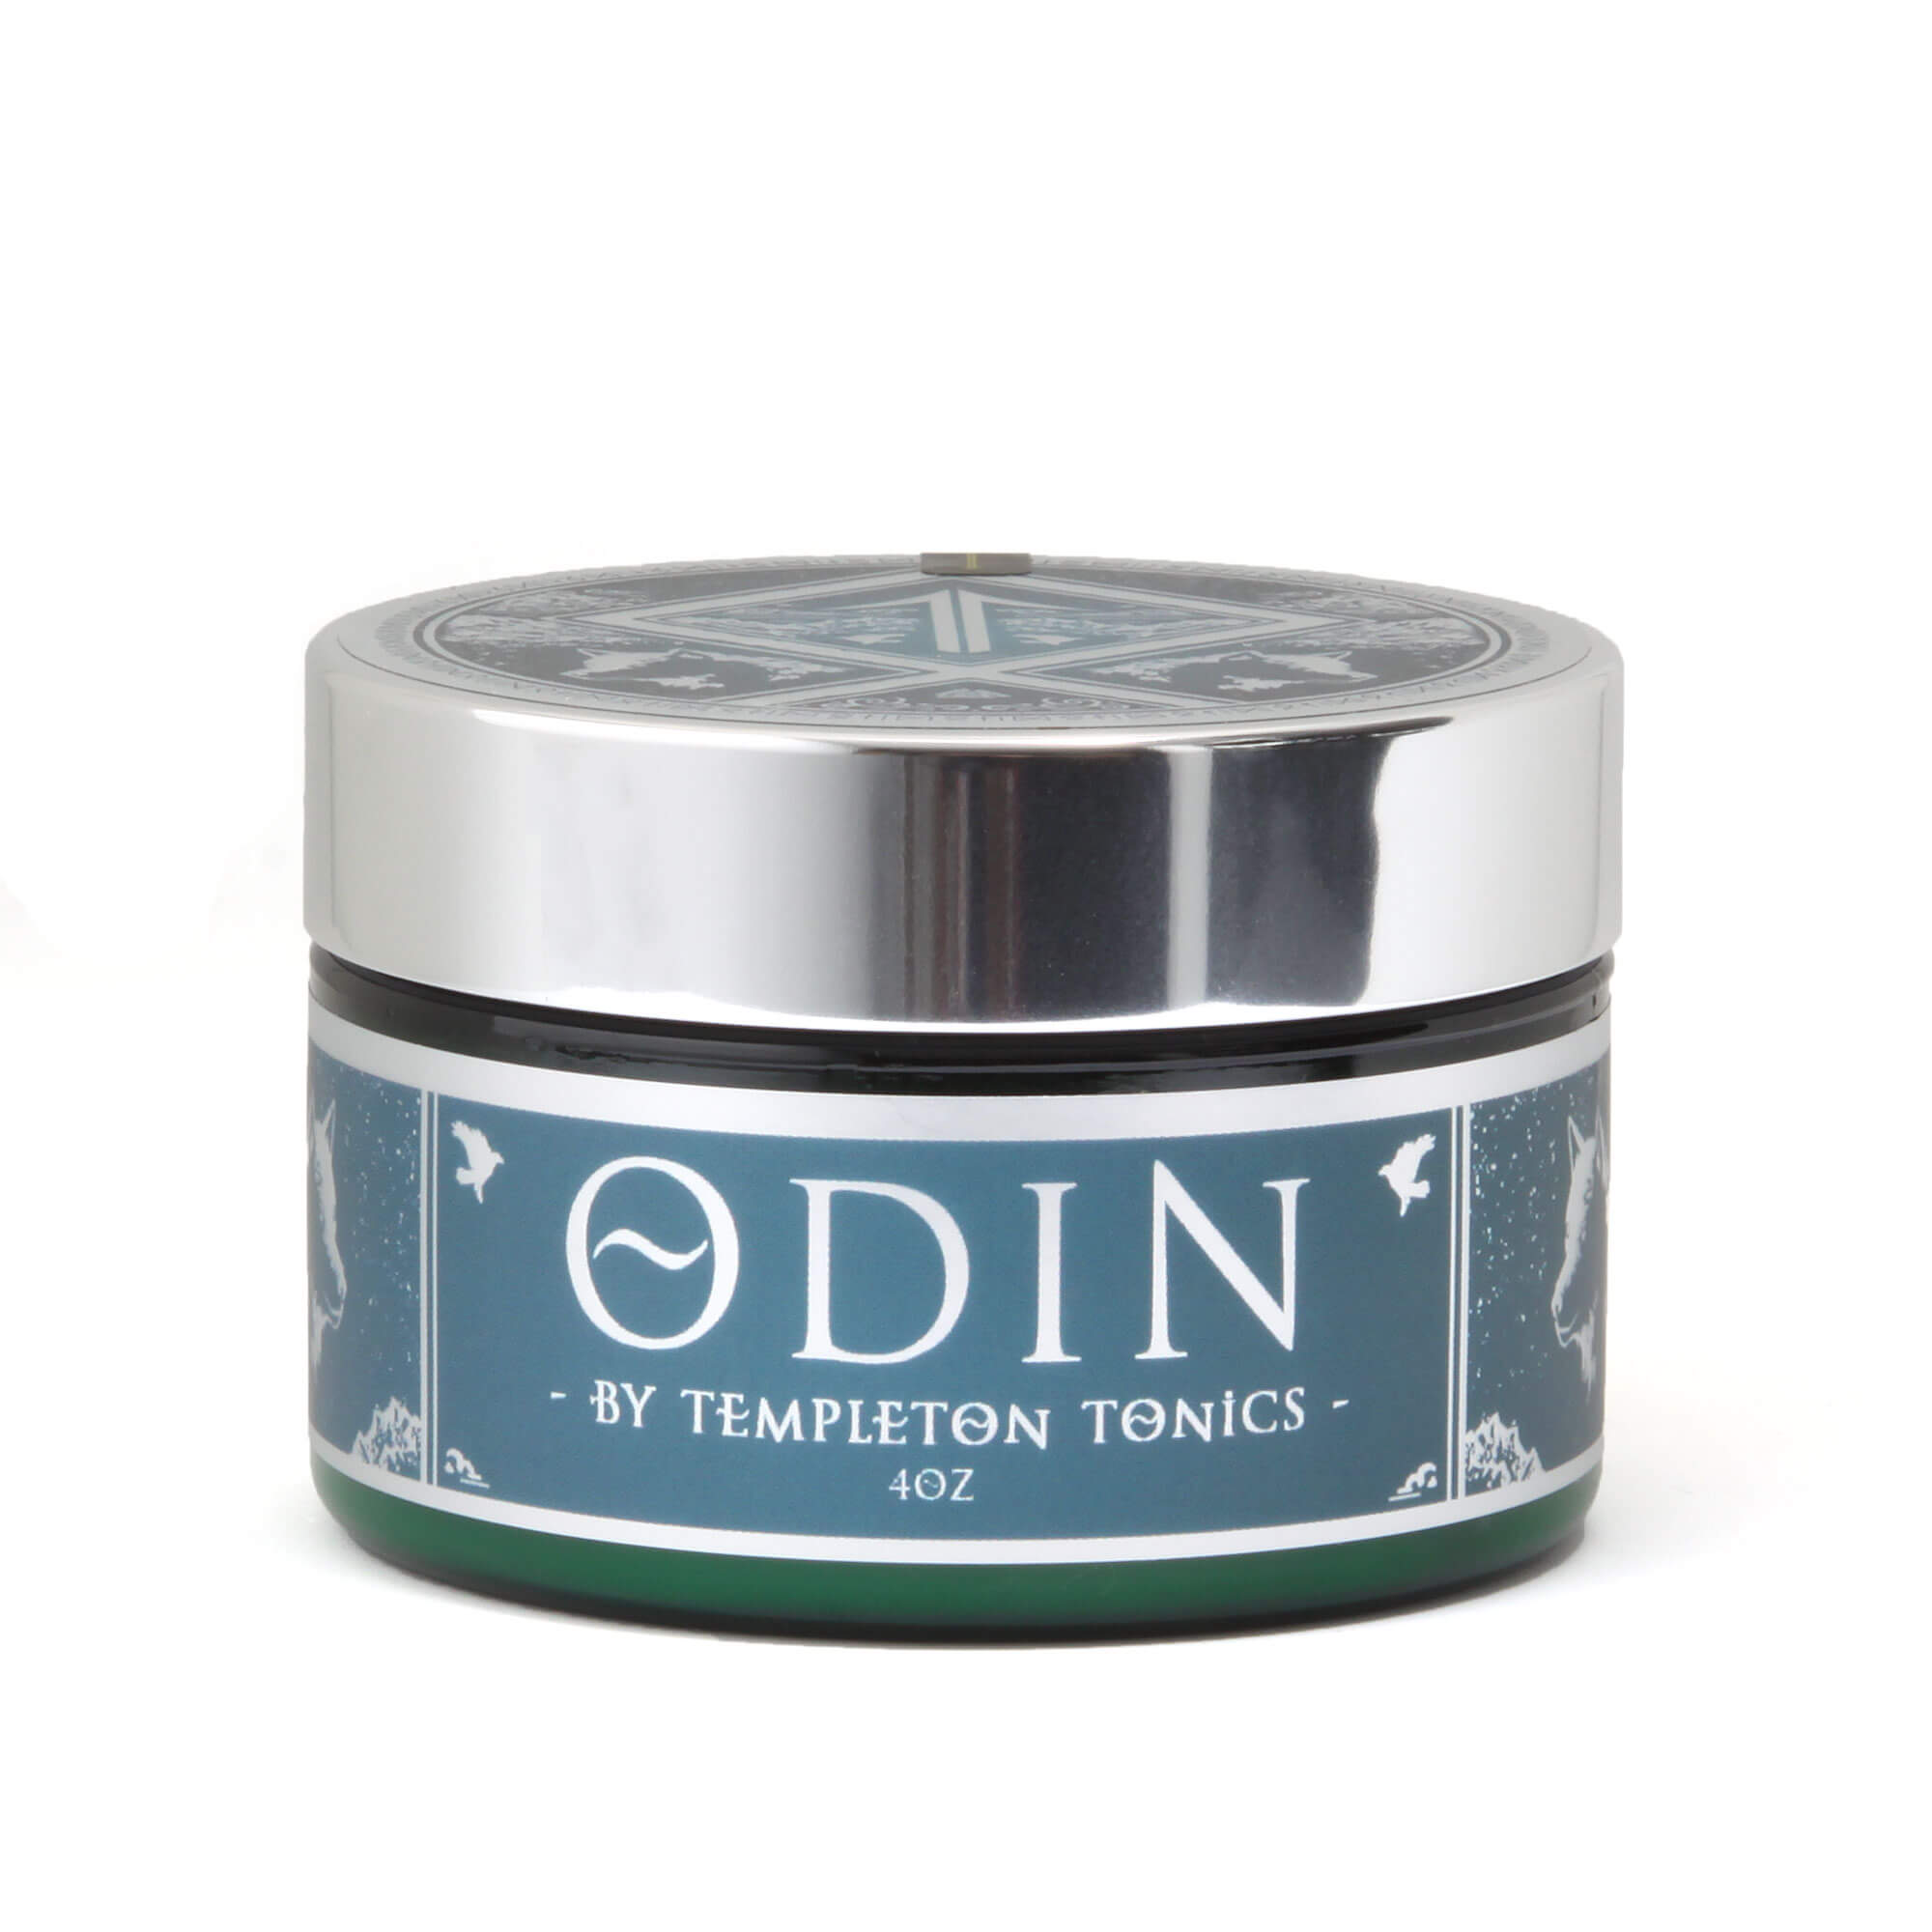 Templeton Tonics Odin Wax Cream